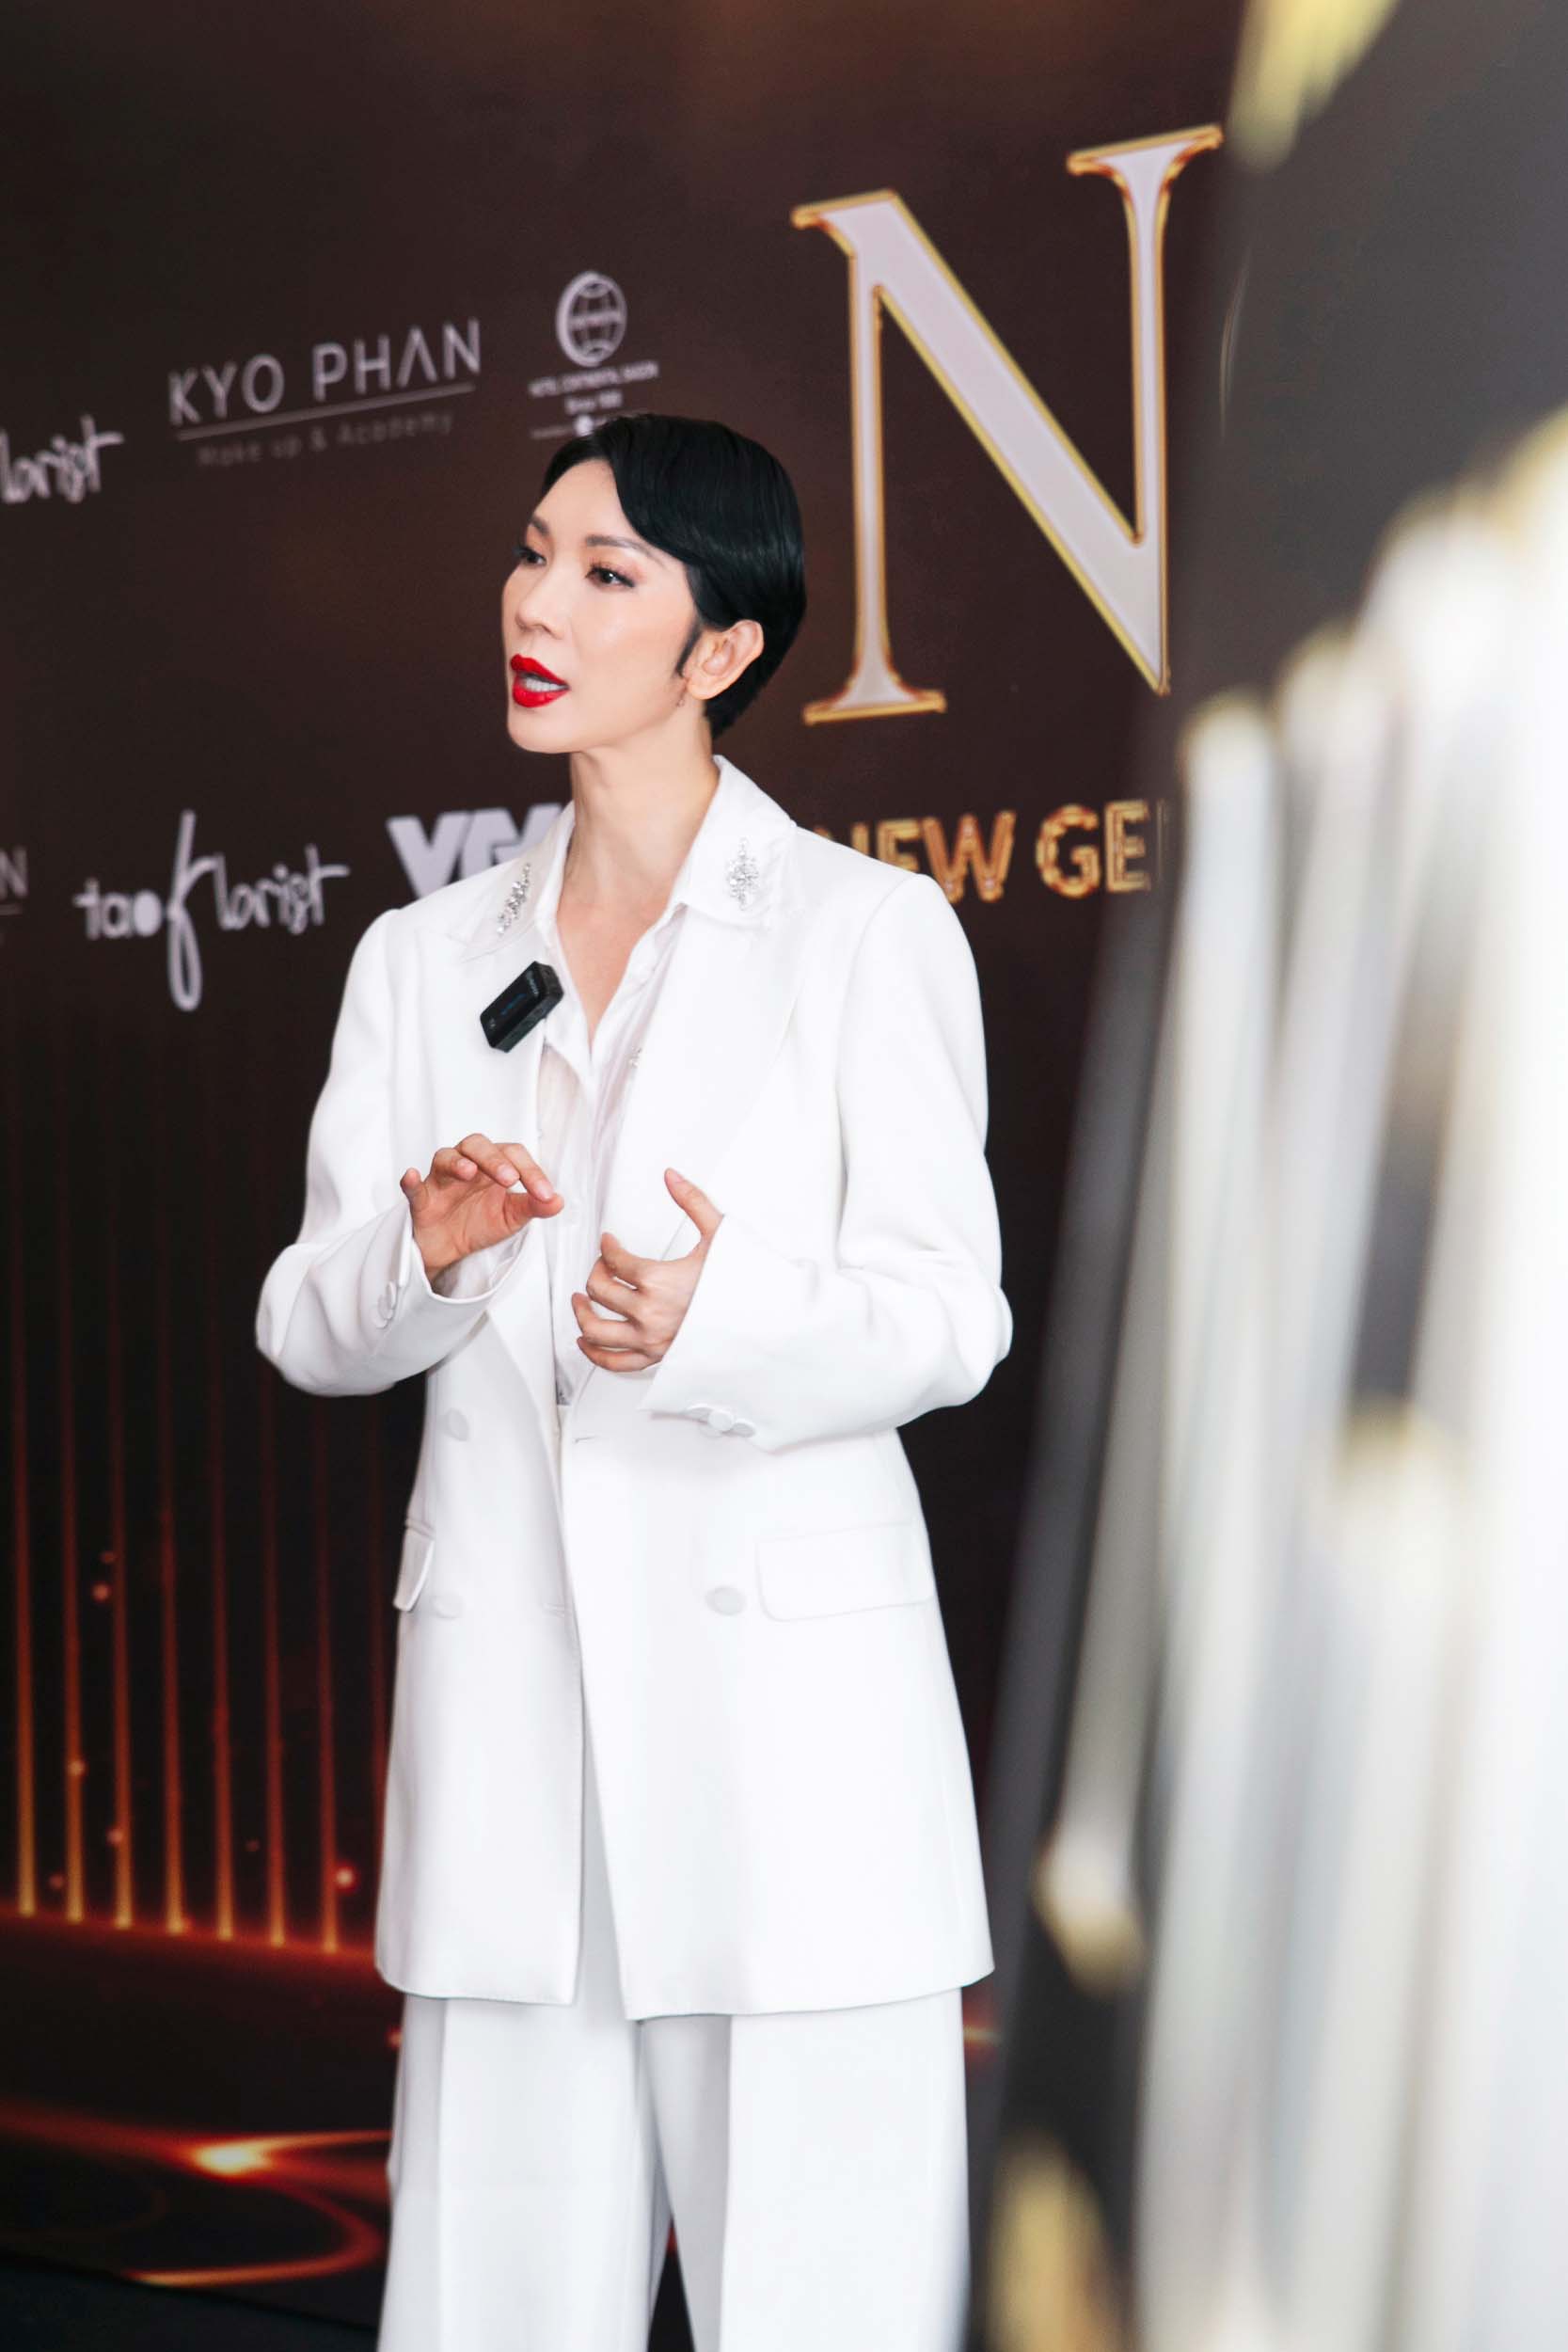 Xuân Lan làm show thời trang ở Hàn Quốc kết nối các thế hệ người mẫu Việt Nam - ảnh 2